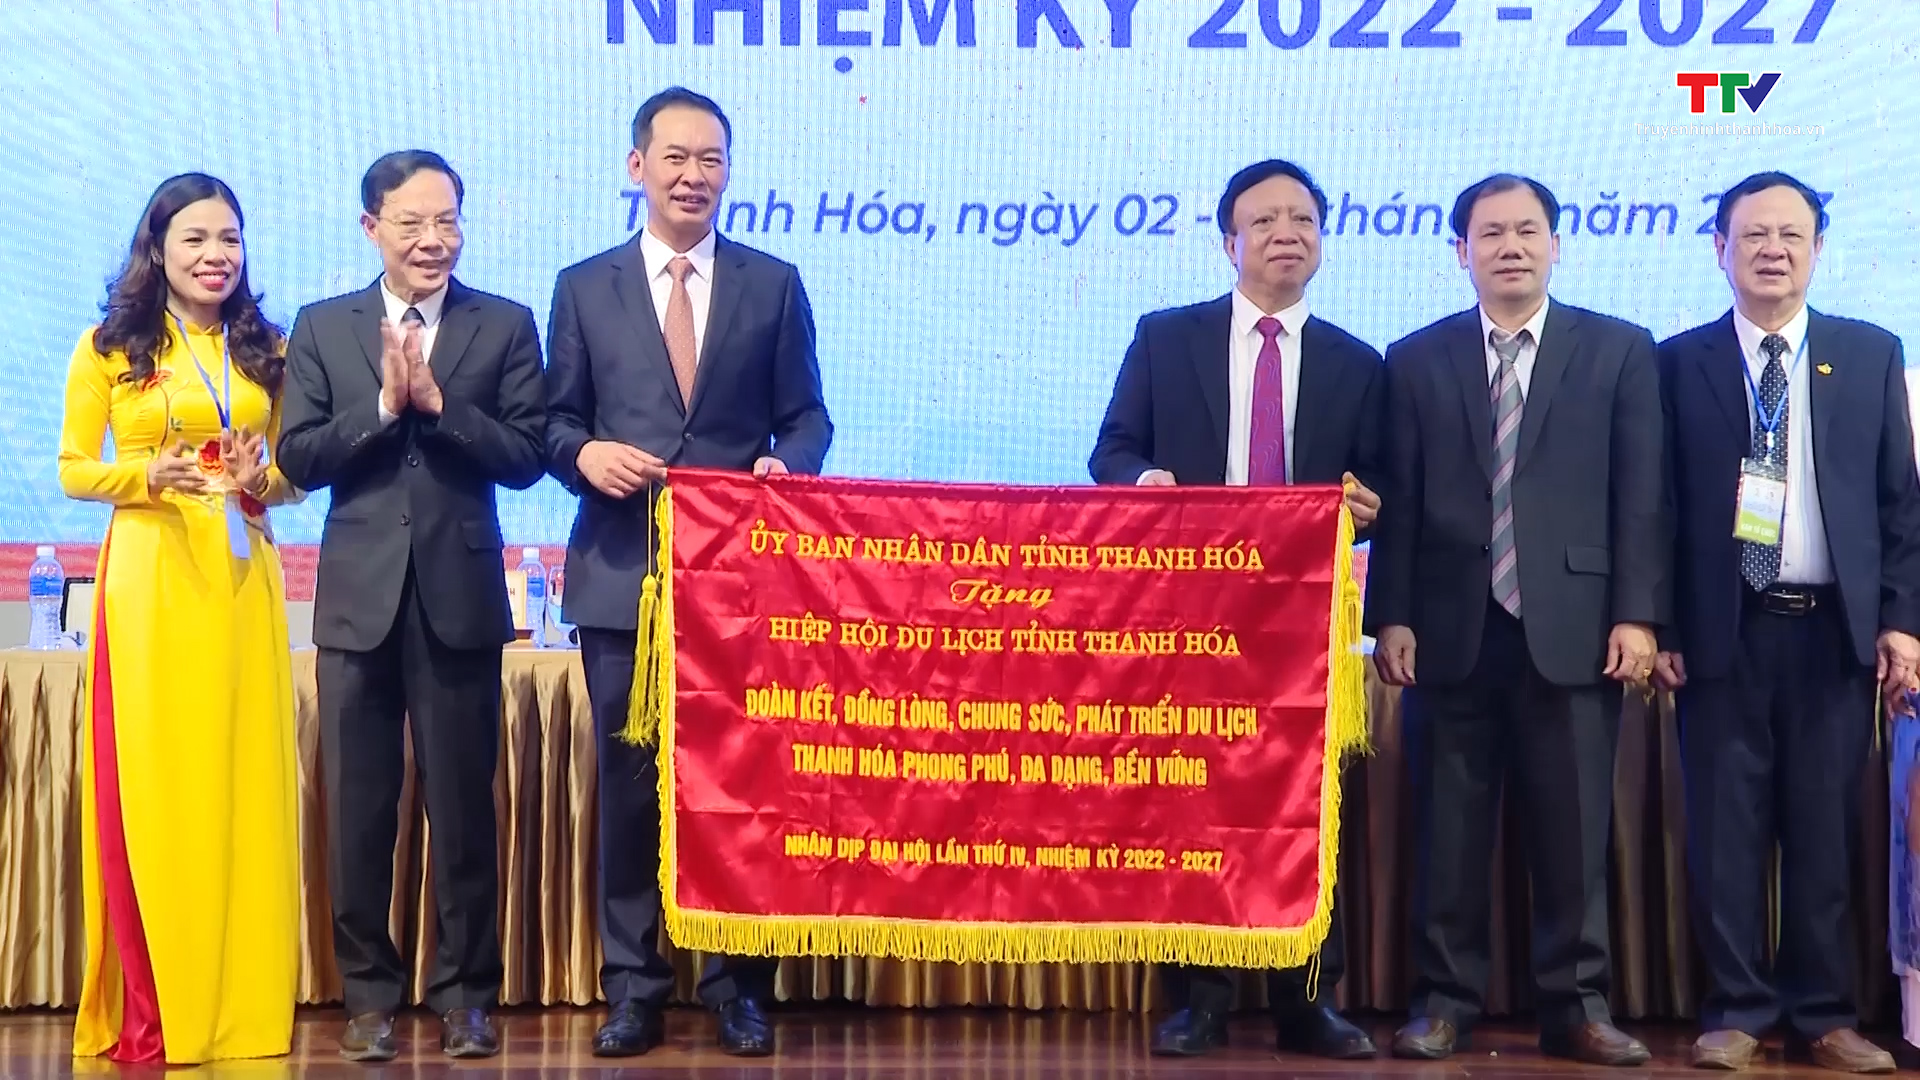 Đại hội Hiệp hội Du lịch tỉnh Thanh Hóa lần thứ IV, nhiệm kỳ 2022-2027 - Ảnh 3.